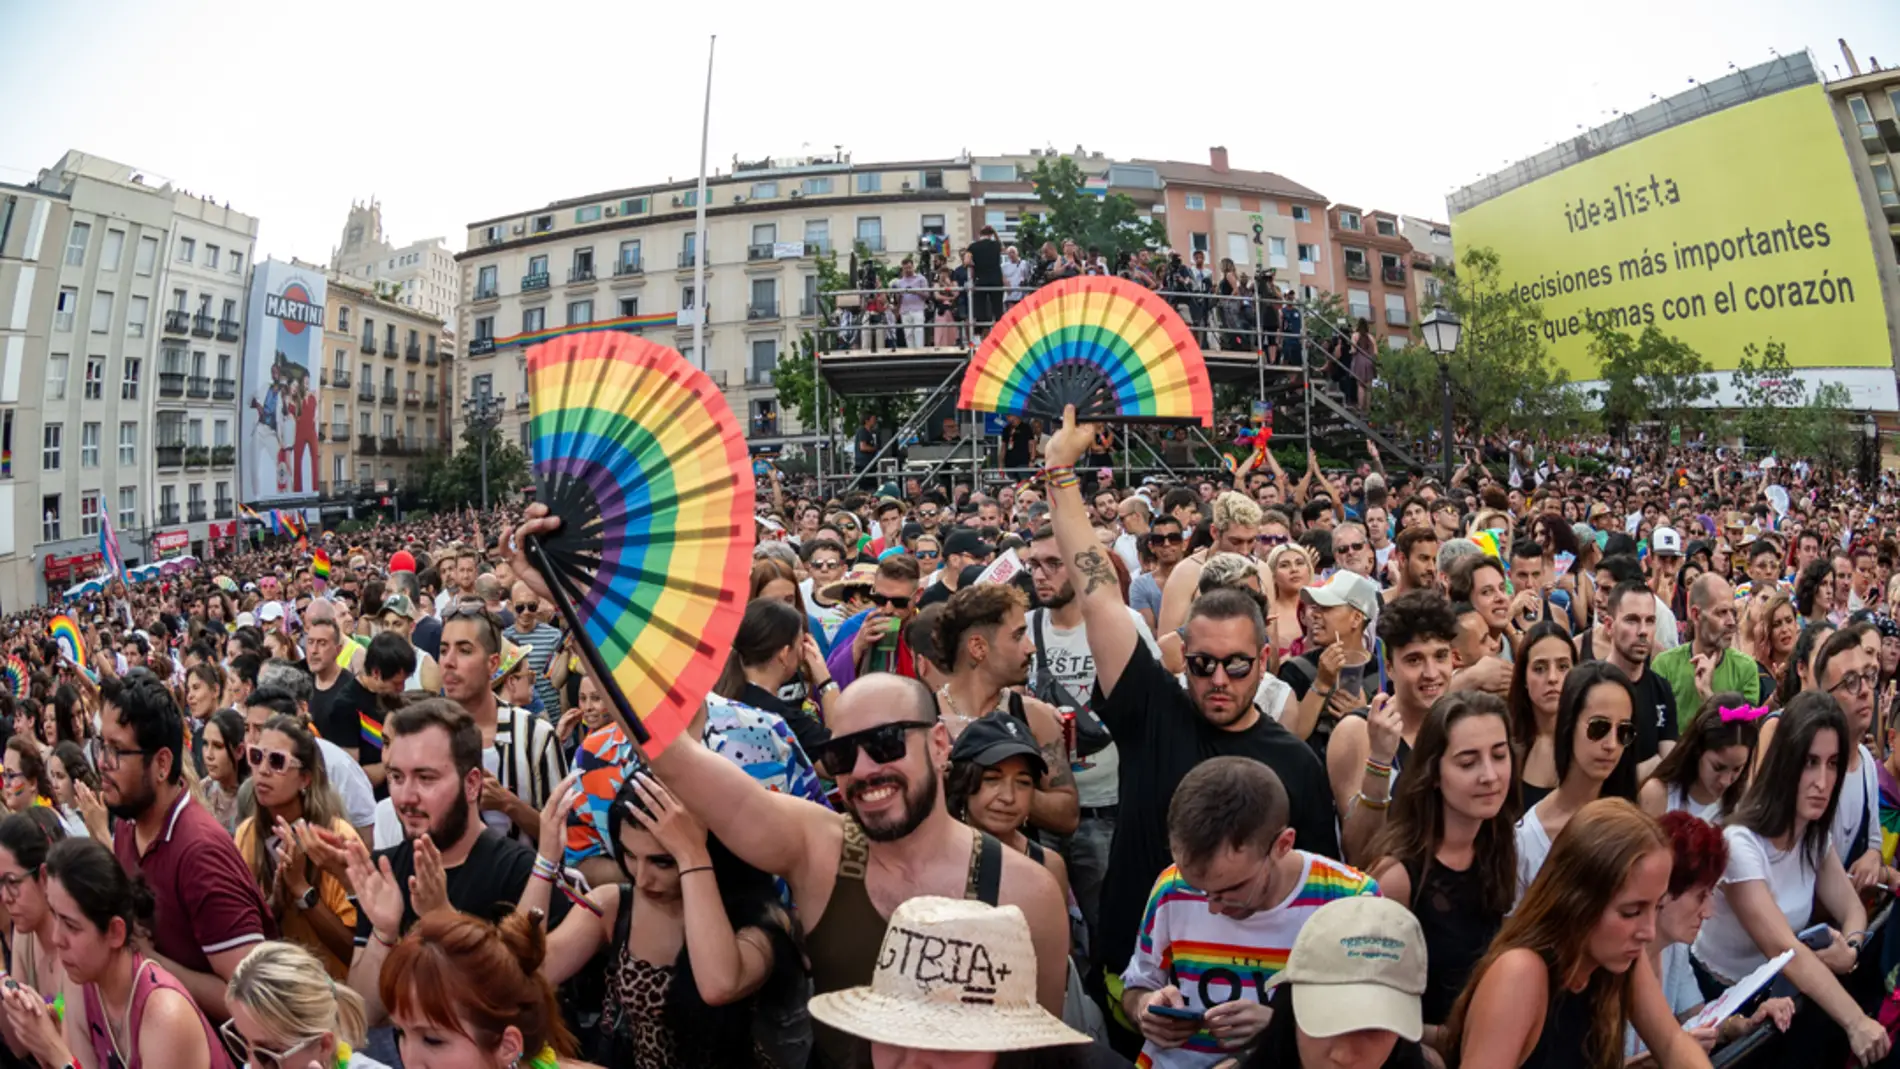 A Qué Hora Es La Manifestación Del Orgullo En Madrid Recorrido Y Cortes De Tráfico Onda Cero